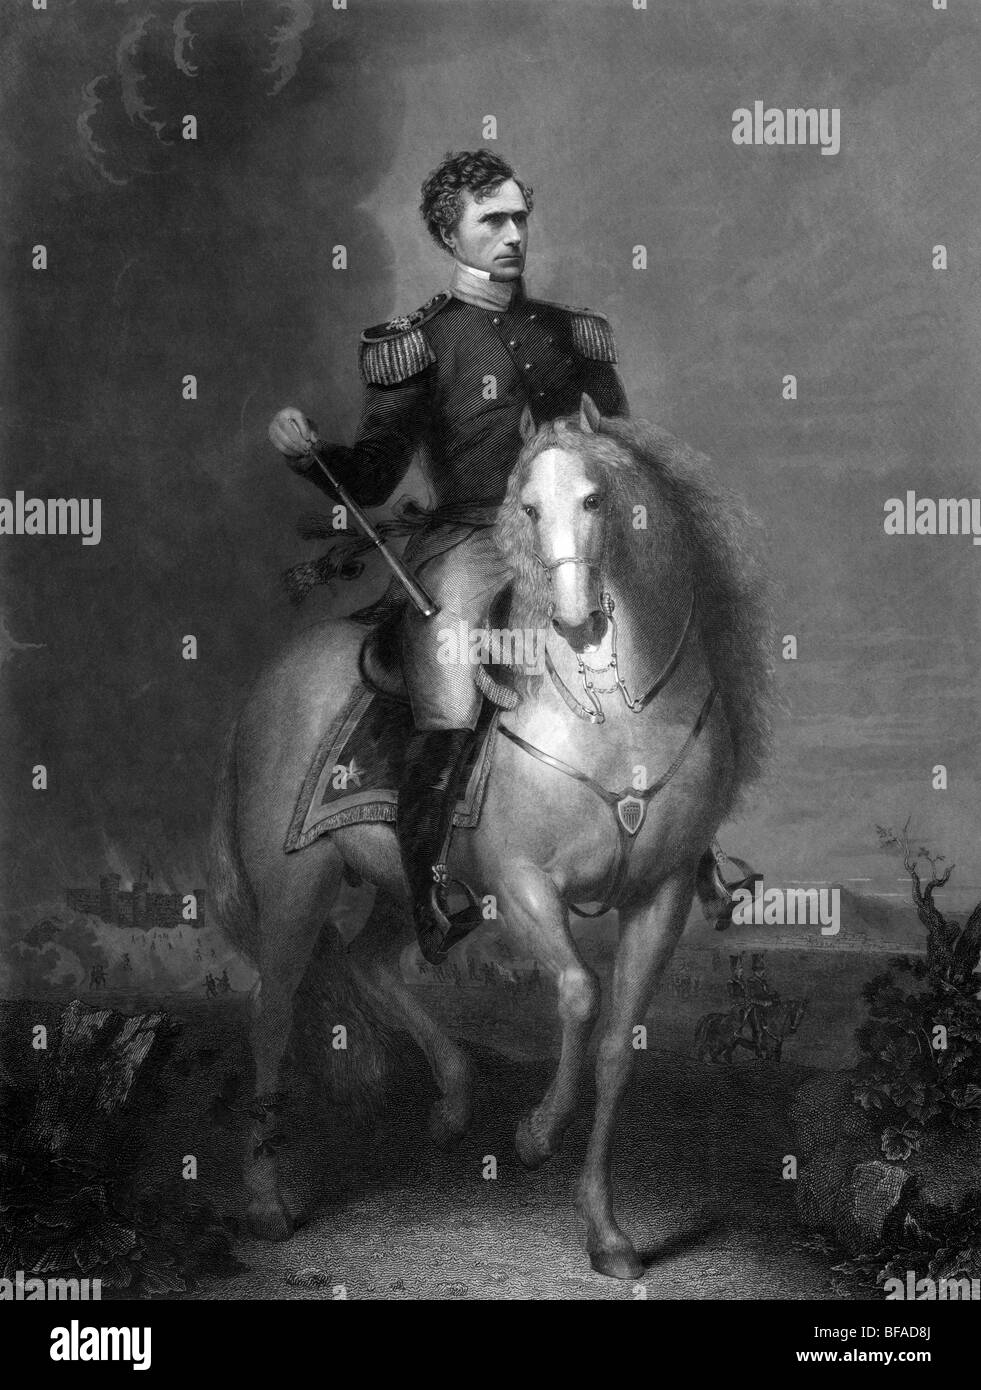 Circa 1852 Portrait de Franklin Pierce comme un général à cheval - Pierce (1804 - 1869) a été le 14e président des États-Unis (1853 - 1857). Banque D'Images